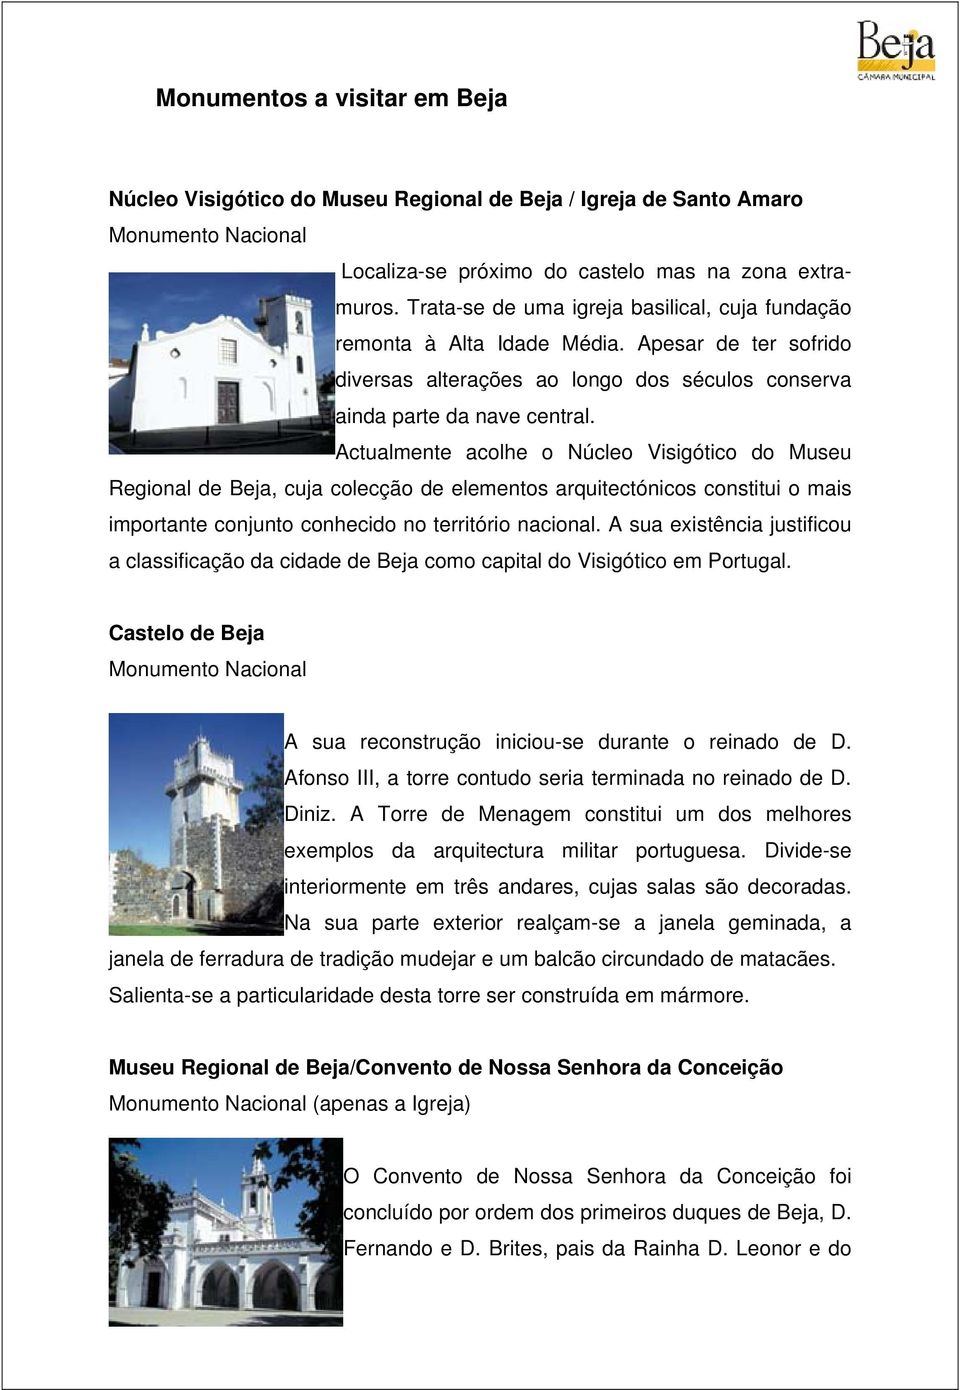 Actualmente acolhe o Núcleo Visigótico do Museu Regional de Beja, cuja colecção de elementos arquitectónicos constitui o mais importante conjunto conhecido no território nacional.